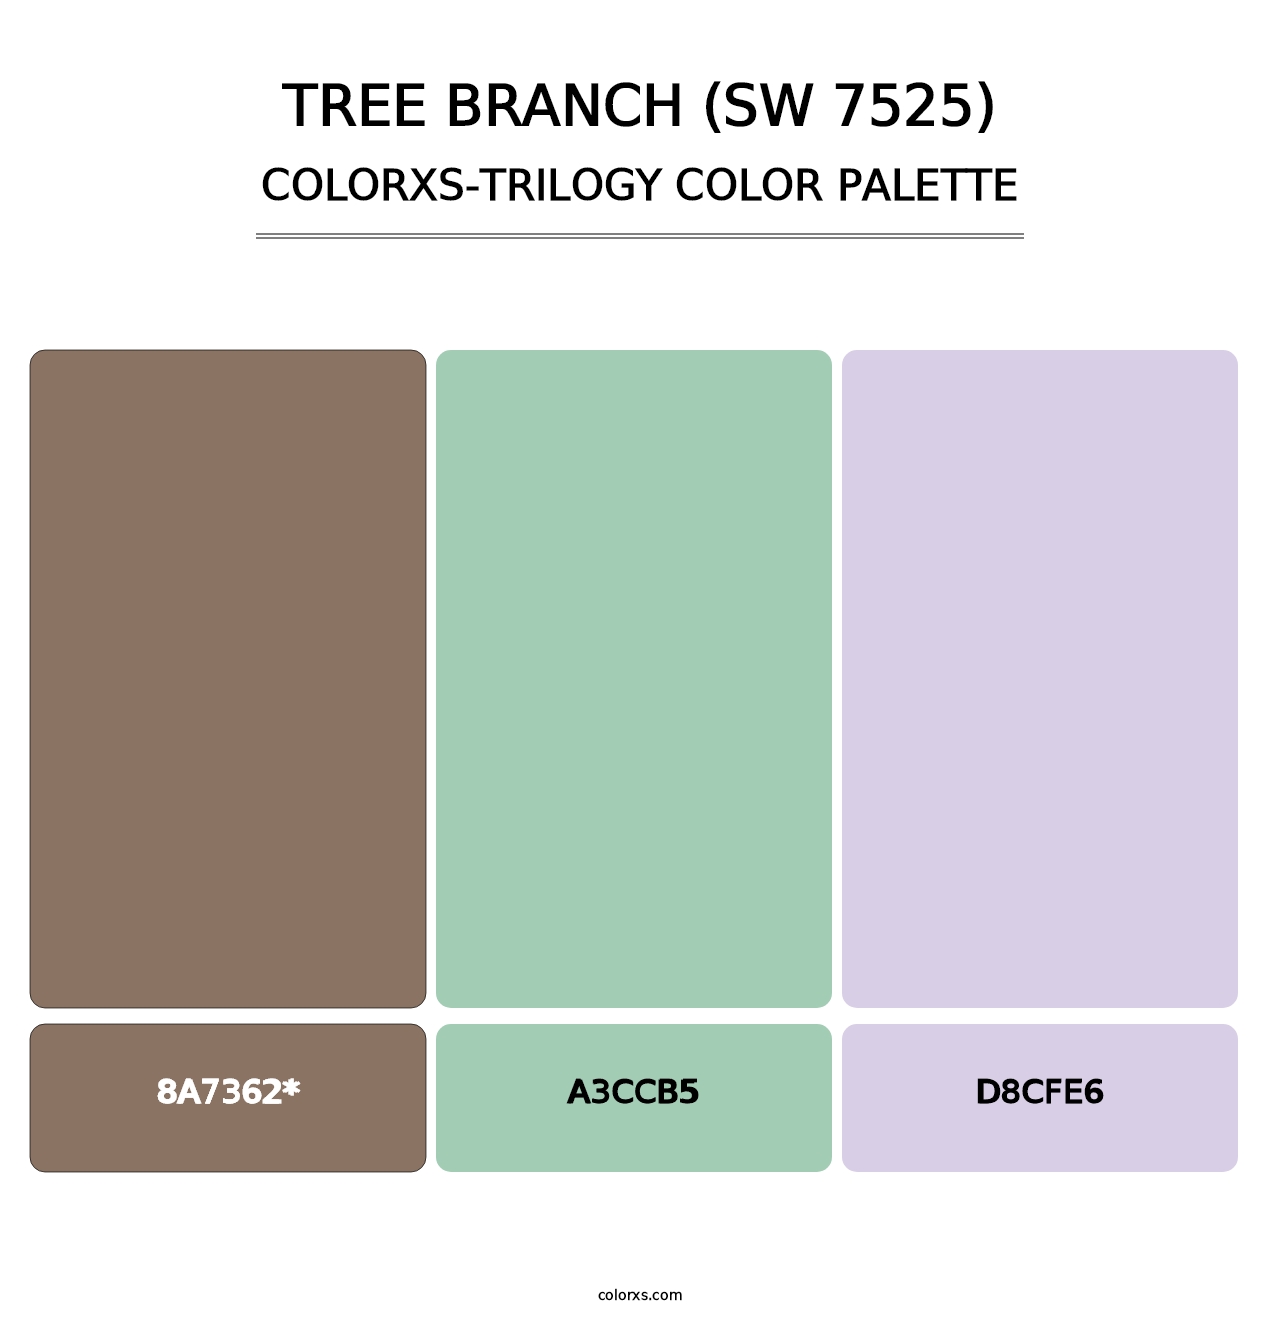 Tree Branch (SW 7525) - Colorxs Trilogy Palette